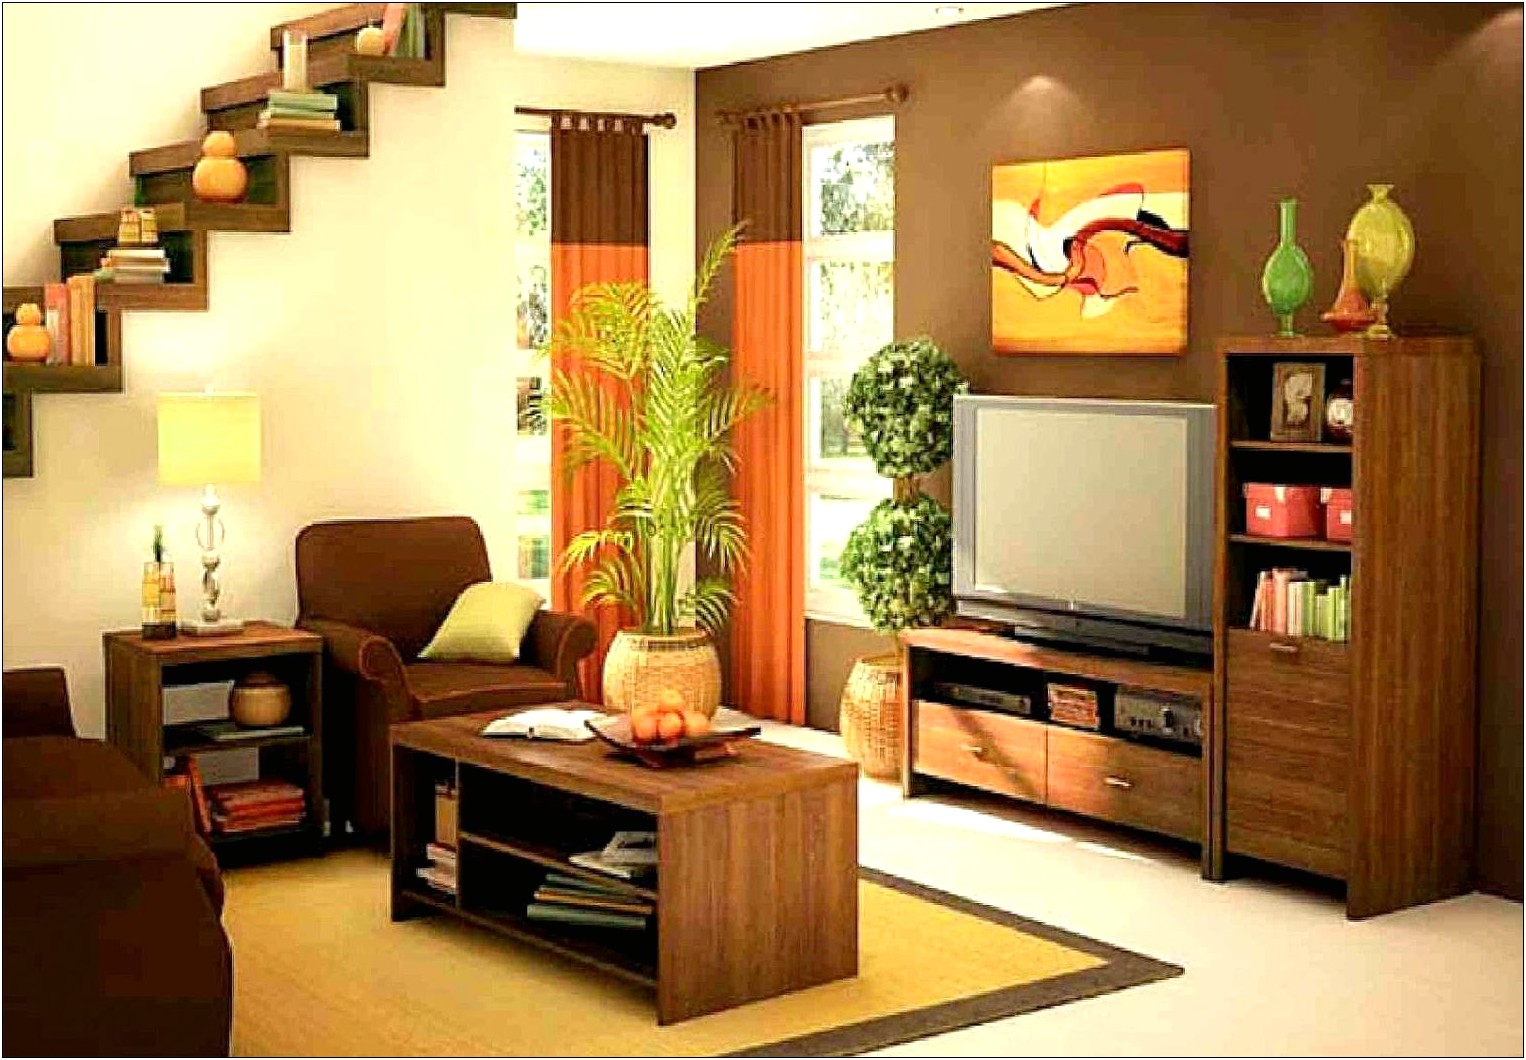 Contoh Desain Interior Minimalis untuk Rumah Sempit